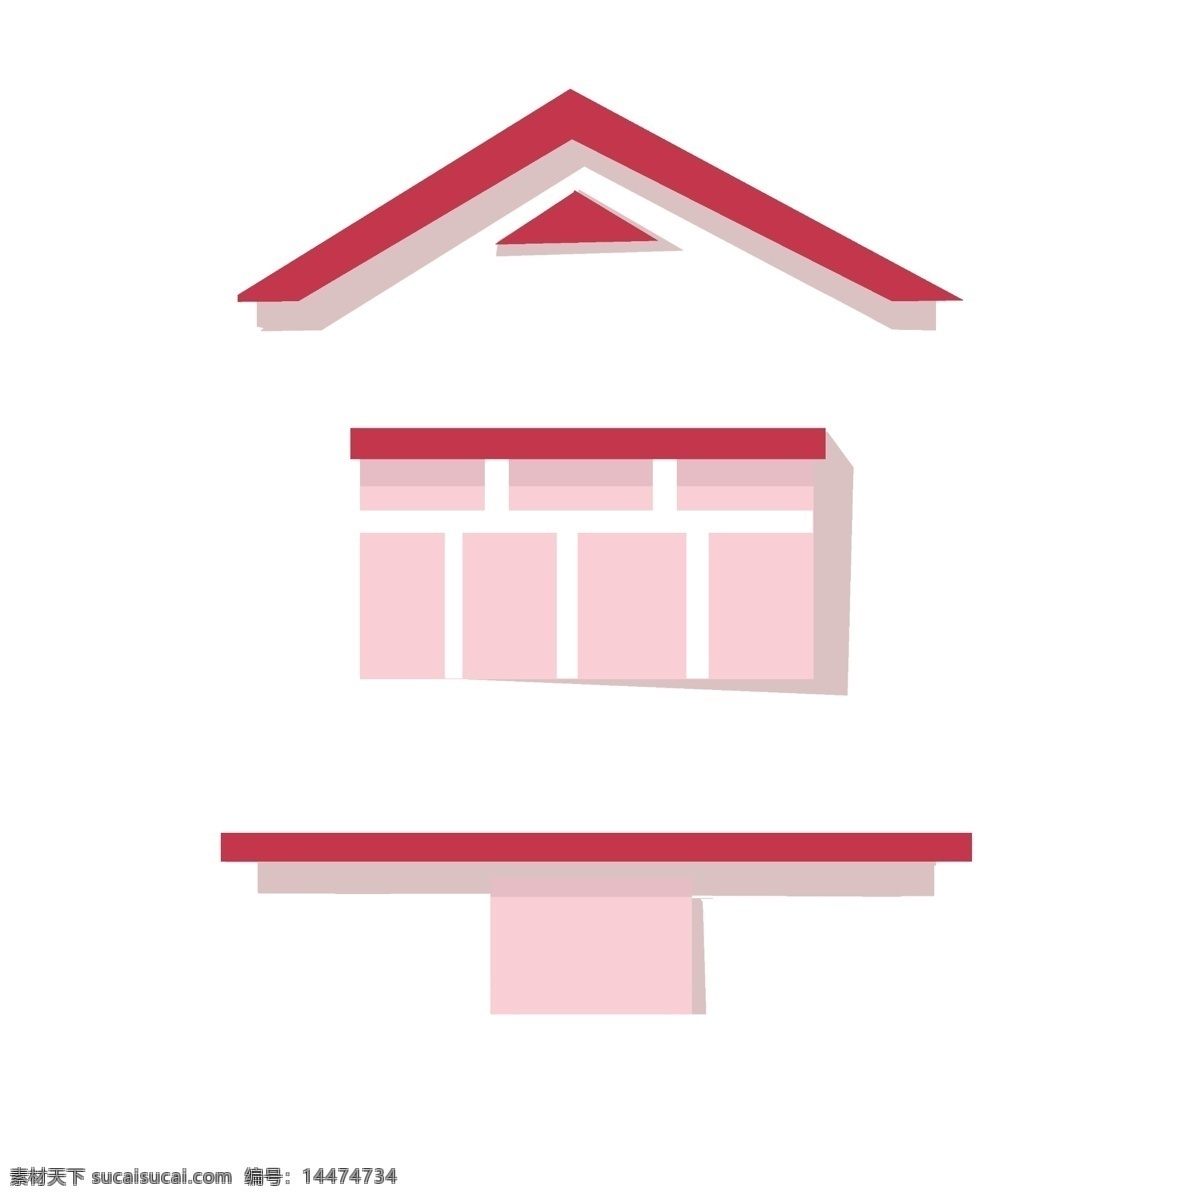 粉色 建筑 房屋 插画 粉色的建筑 卡通插画 建筑插画 房子插画 房屋插画 房屋建筑 粉色的房屋